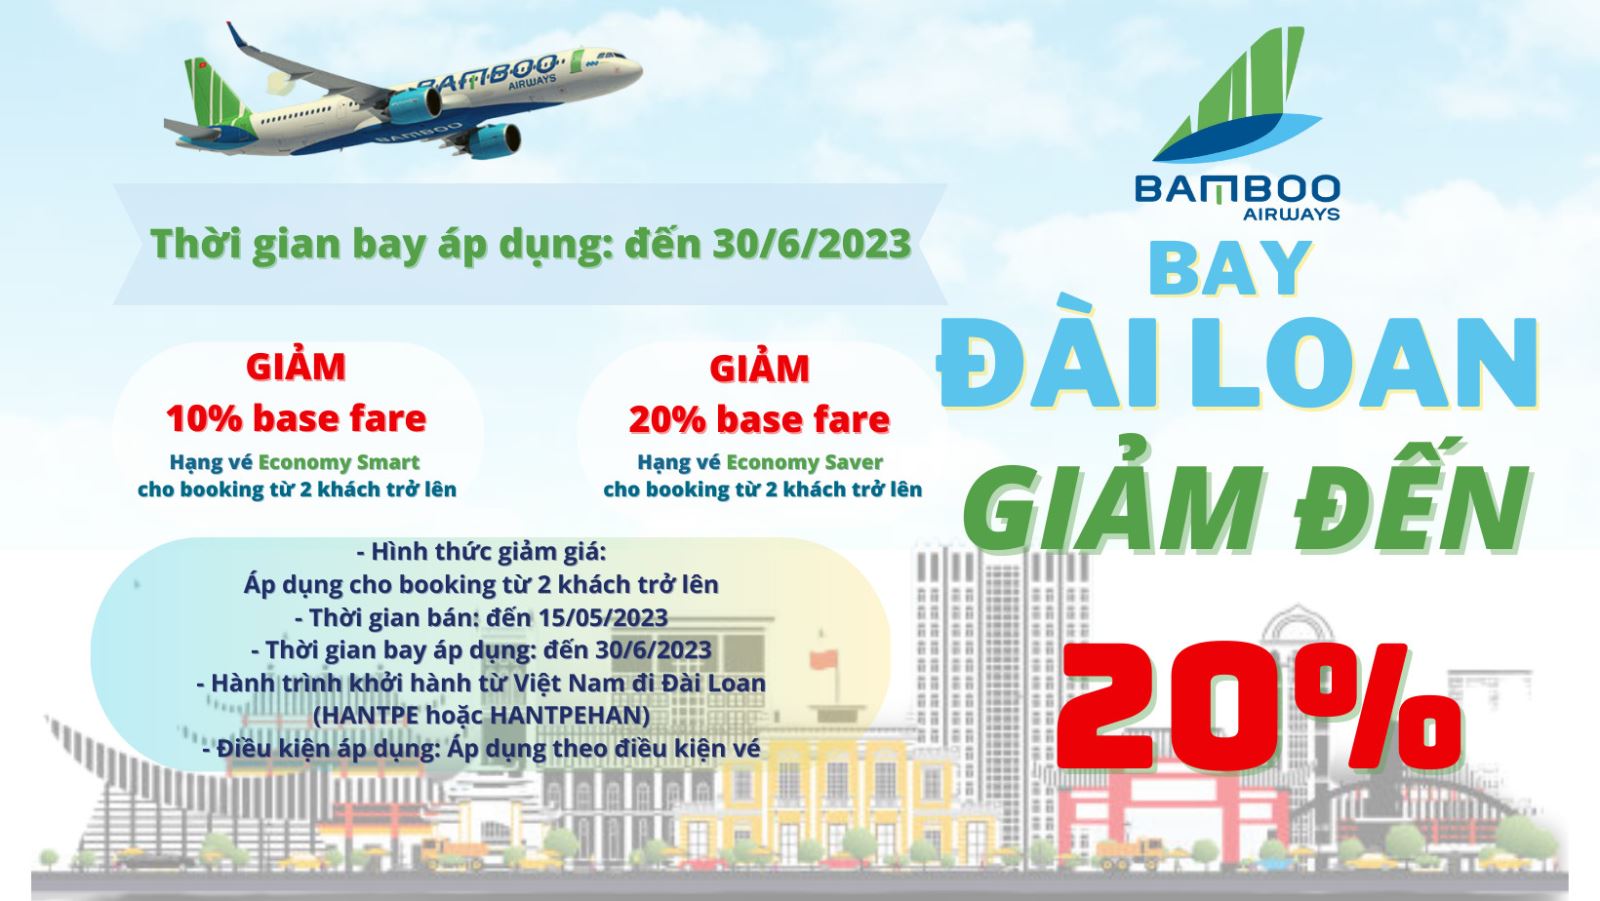 GIẢM ĐẾN 20% ĐƯỜNG BAY HANTPE CỦA BAMBOO AIRWAYS